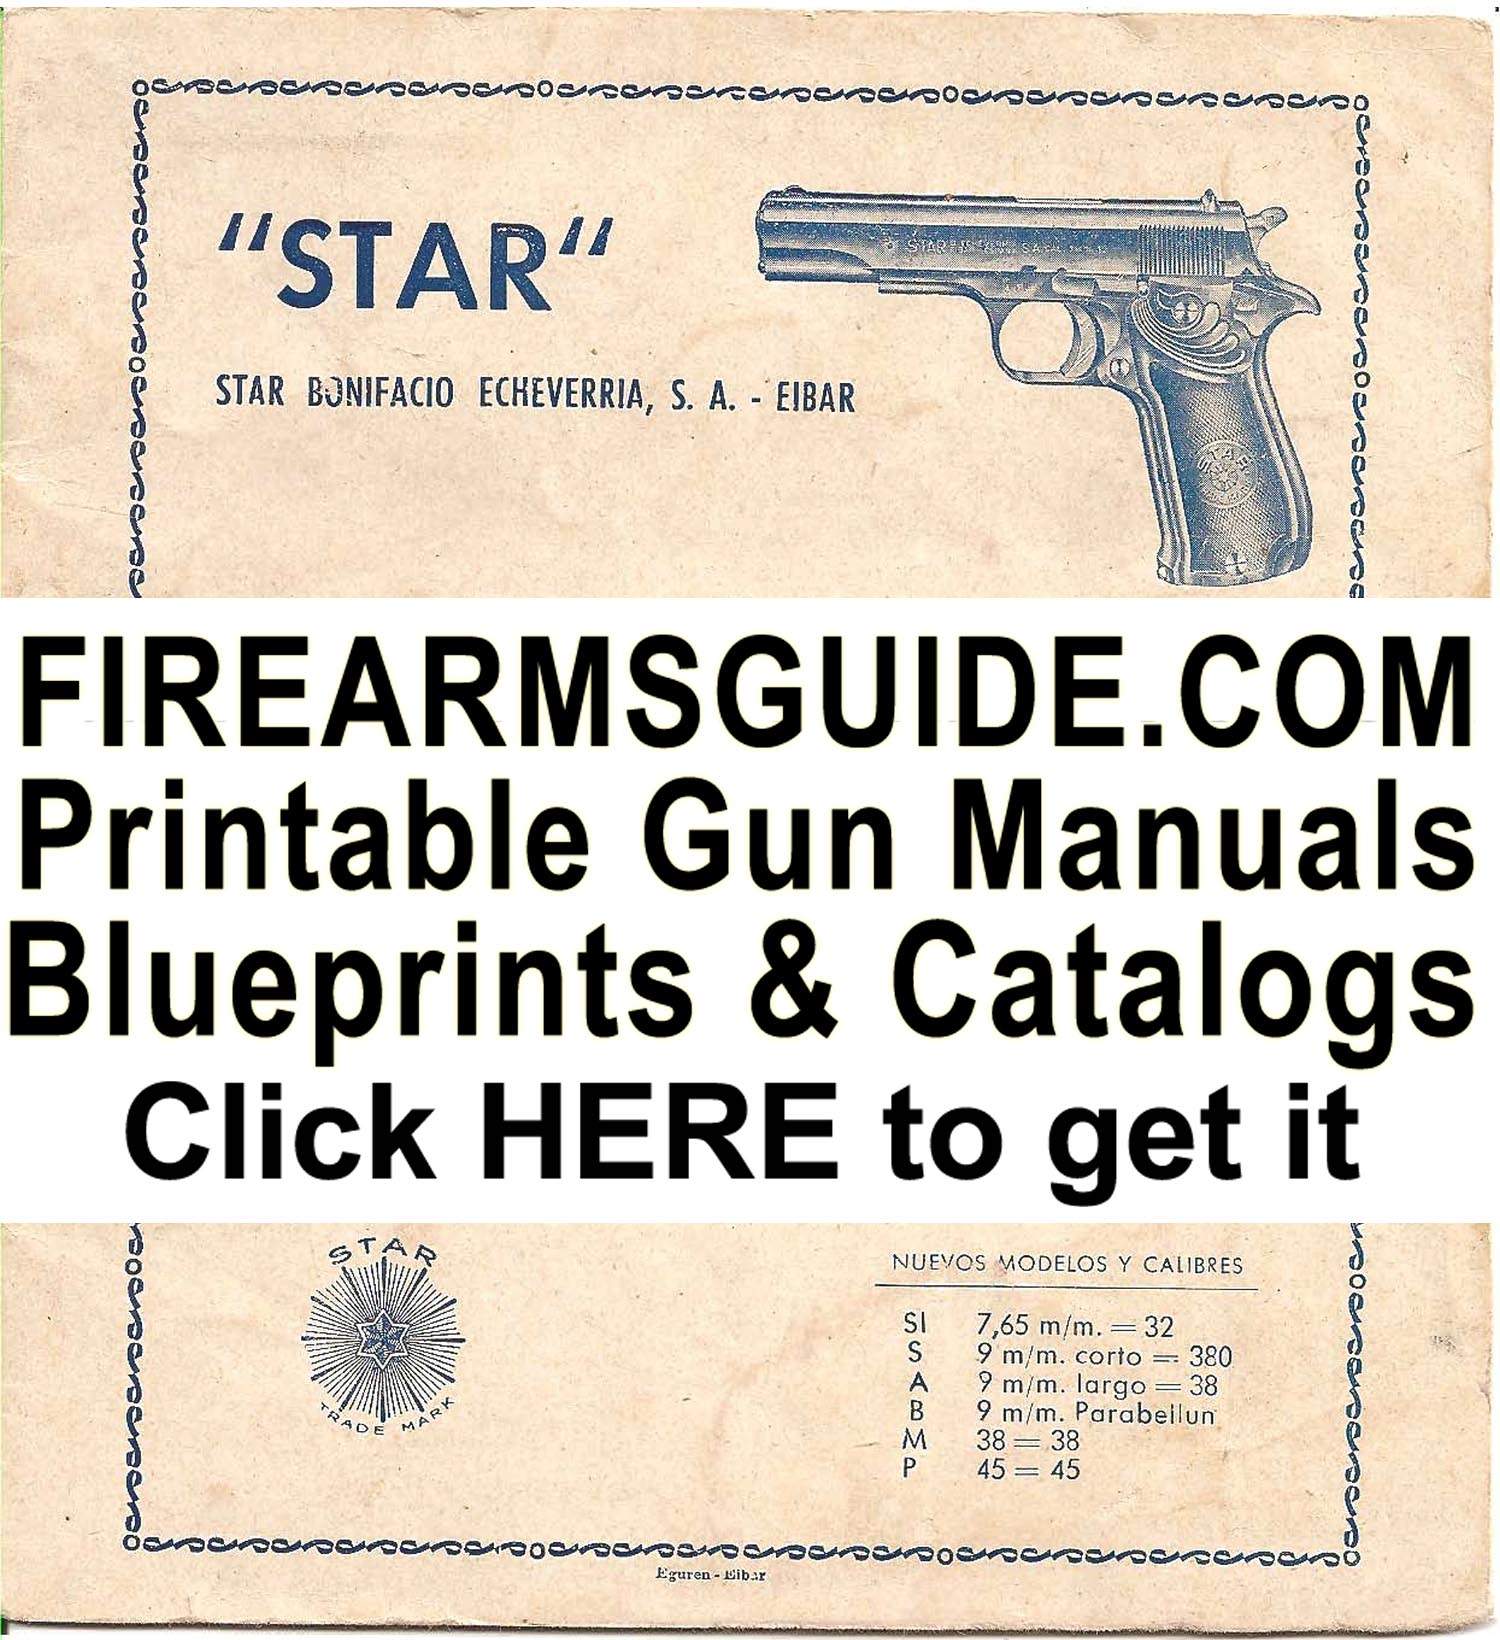 Armi ed accessori softair - Armeria Calibre Magnum